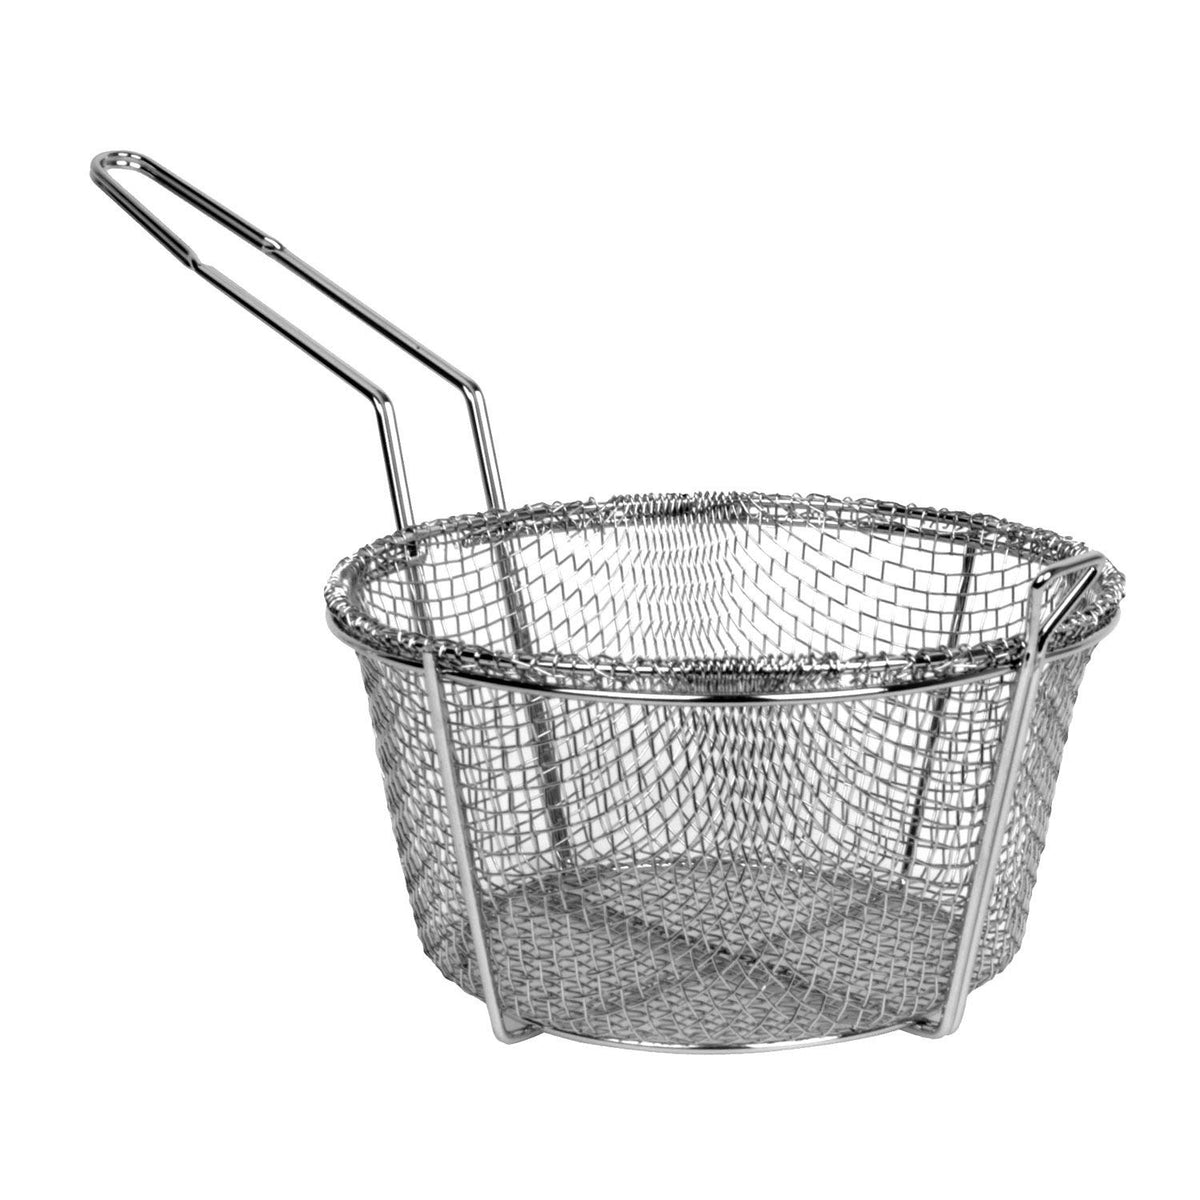 8" Round Metal Fry Frying Basket - tool